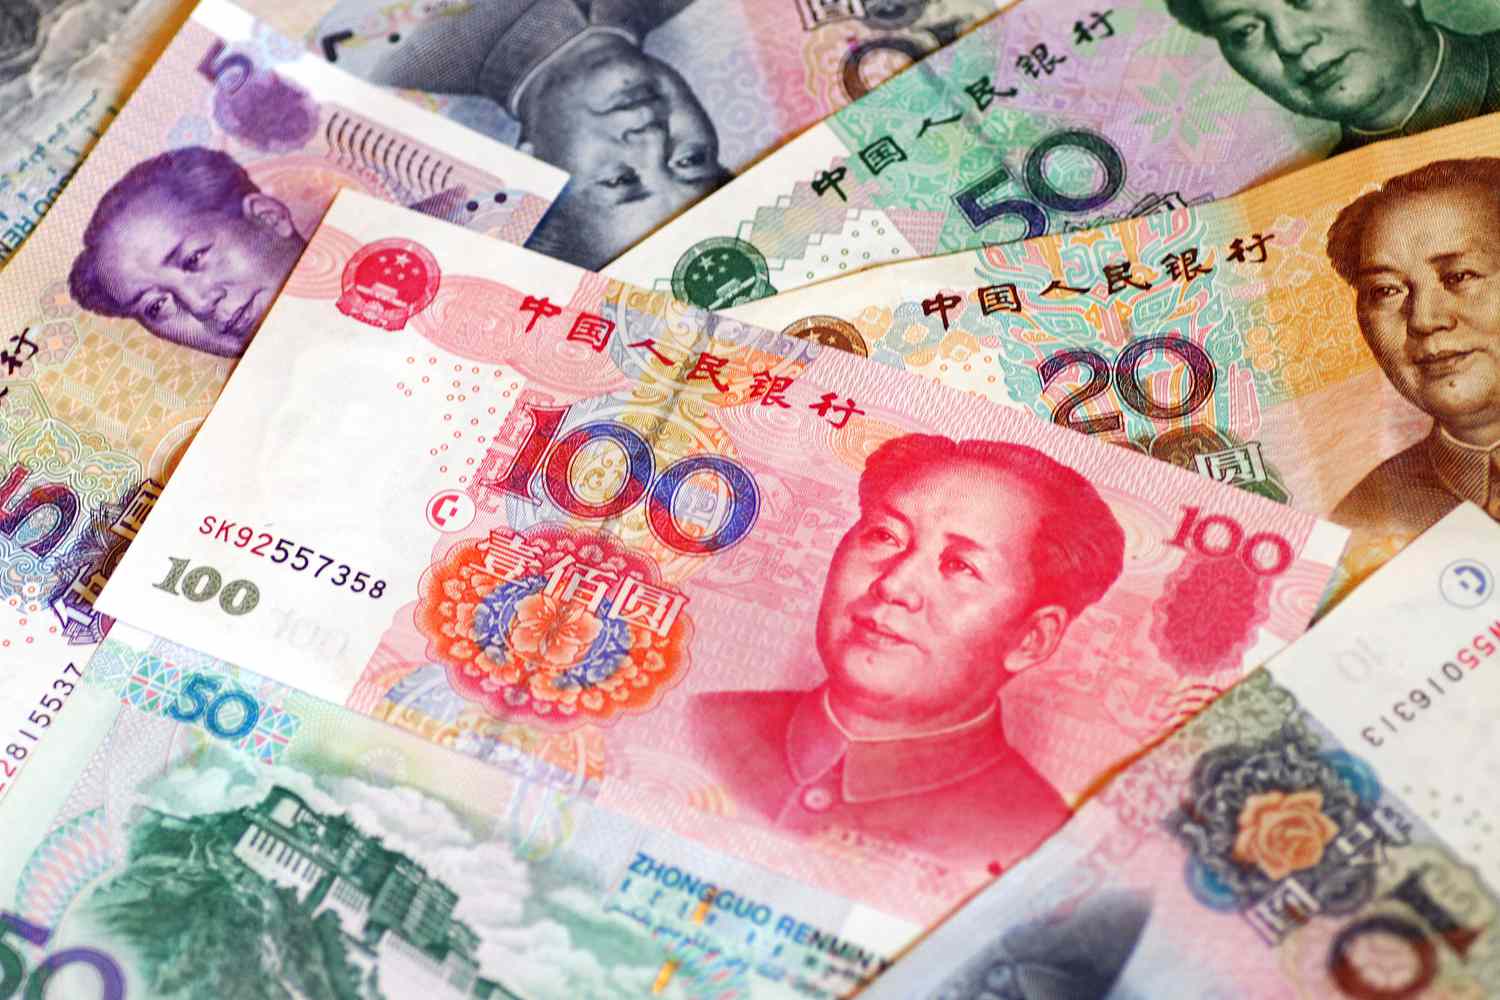 BREAKING: Chinese Yuan weakens to 7.1104 against dollar